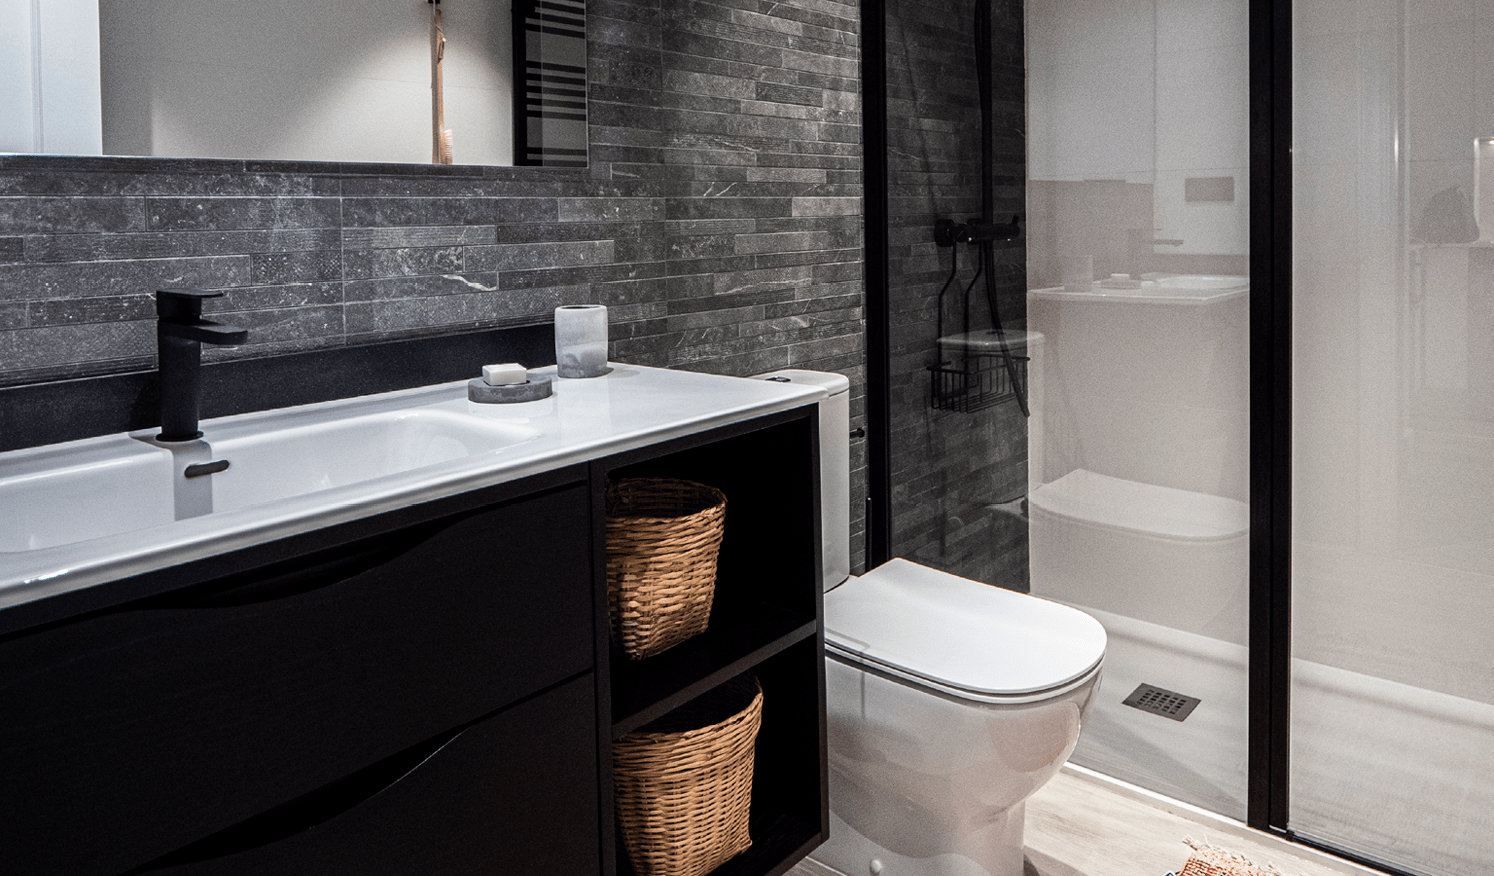 Apartamentos turísticos Montrove_Galeria_Aseo con ducha, detalles en negro y color madera